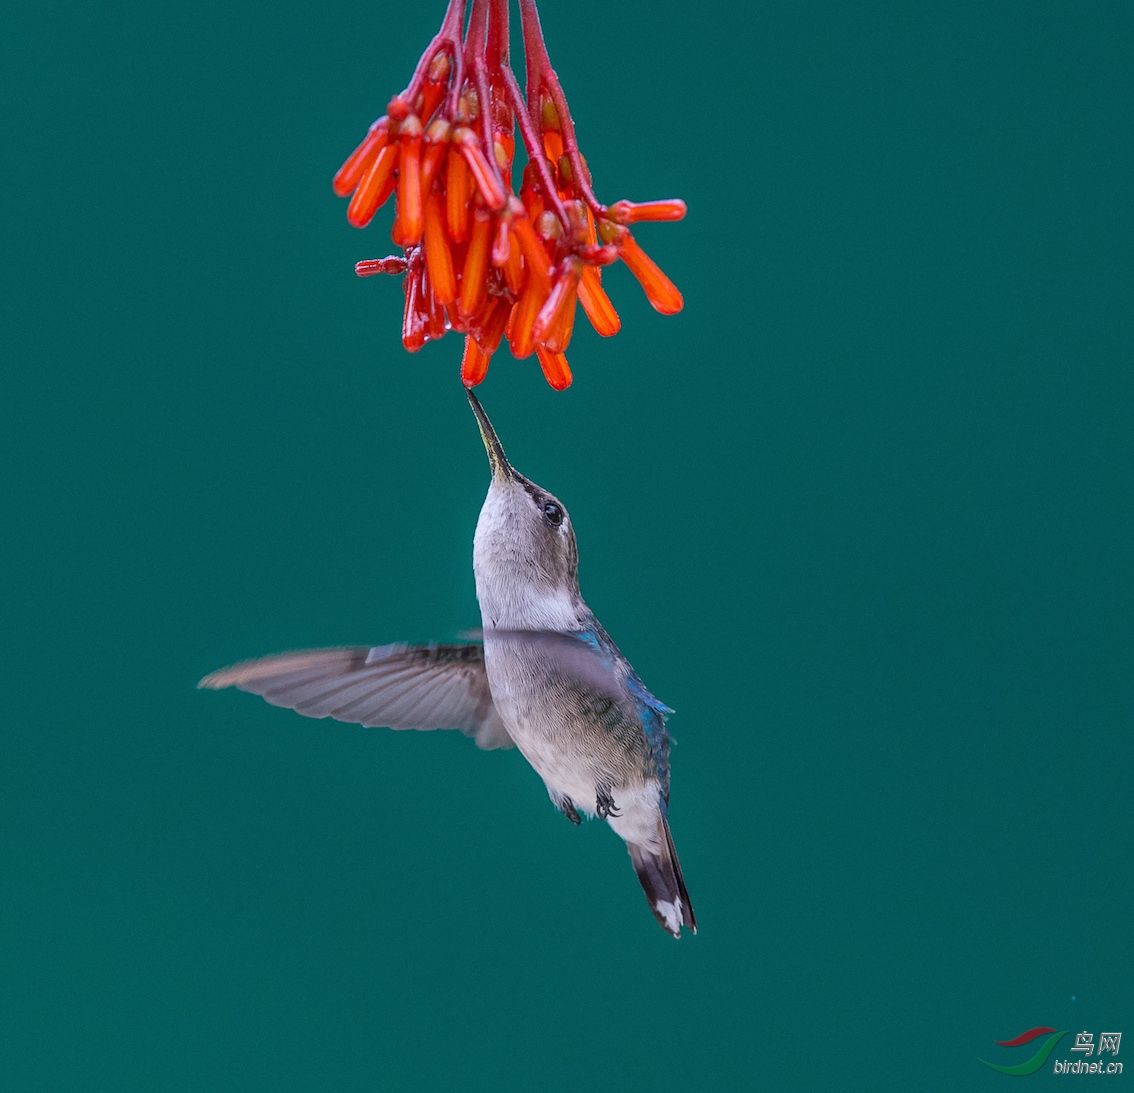 世界体积最小鸟beehummingbird吸食花蜜照片